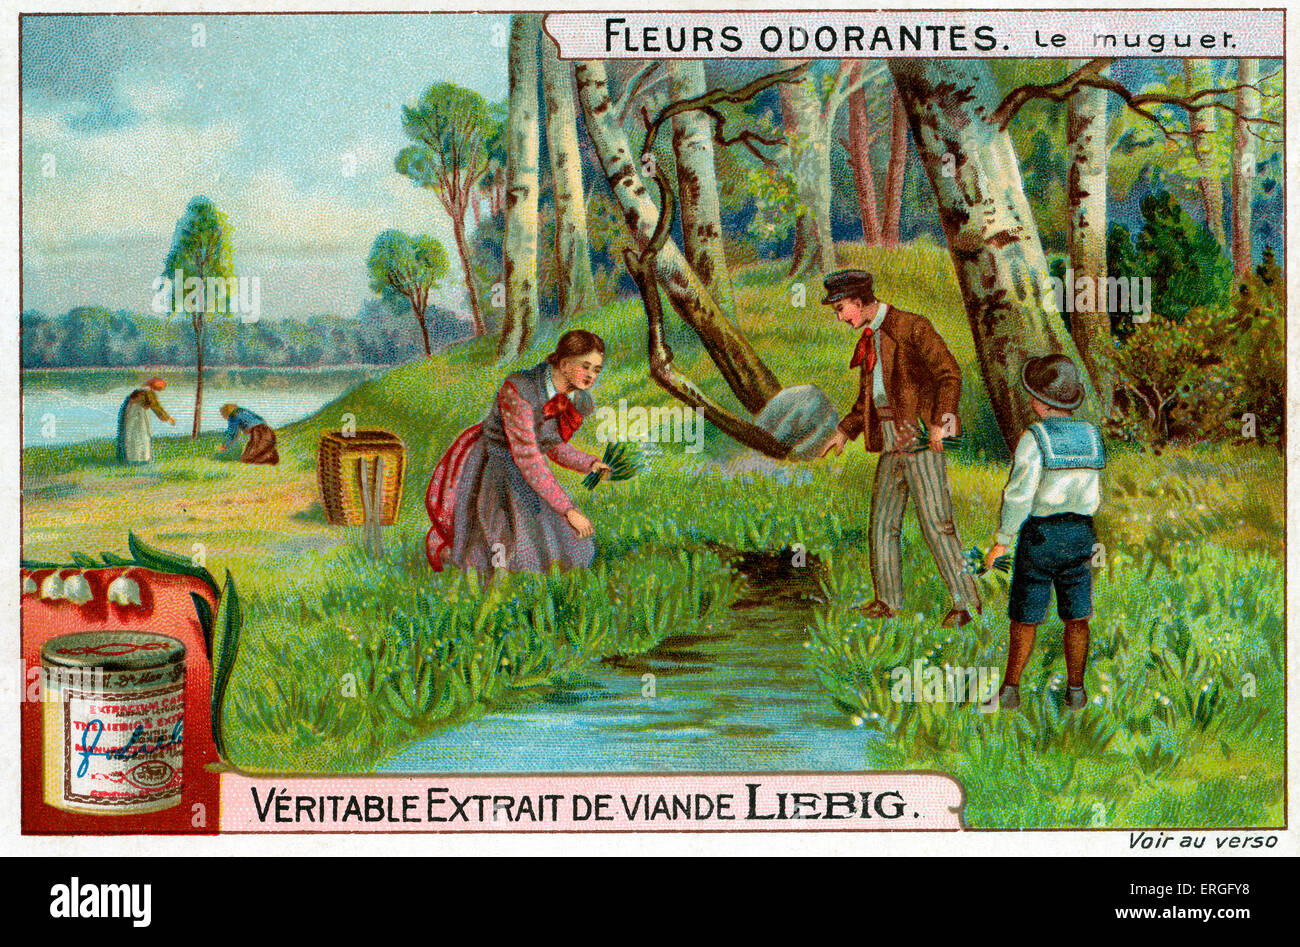 Süß - duftenden Blumen: Lilly des Tales.  1911 (Französisch: Le Muguet). Liebig Fleisch Extrakt Sammelkartenspiel. Stockfoto